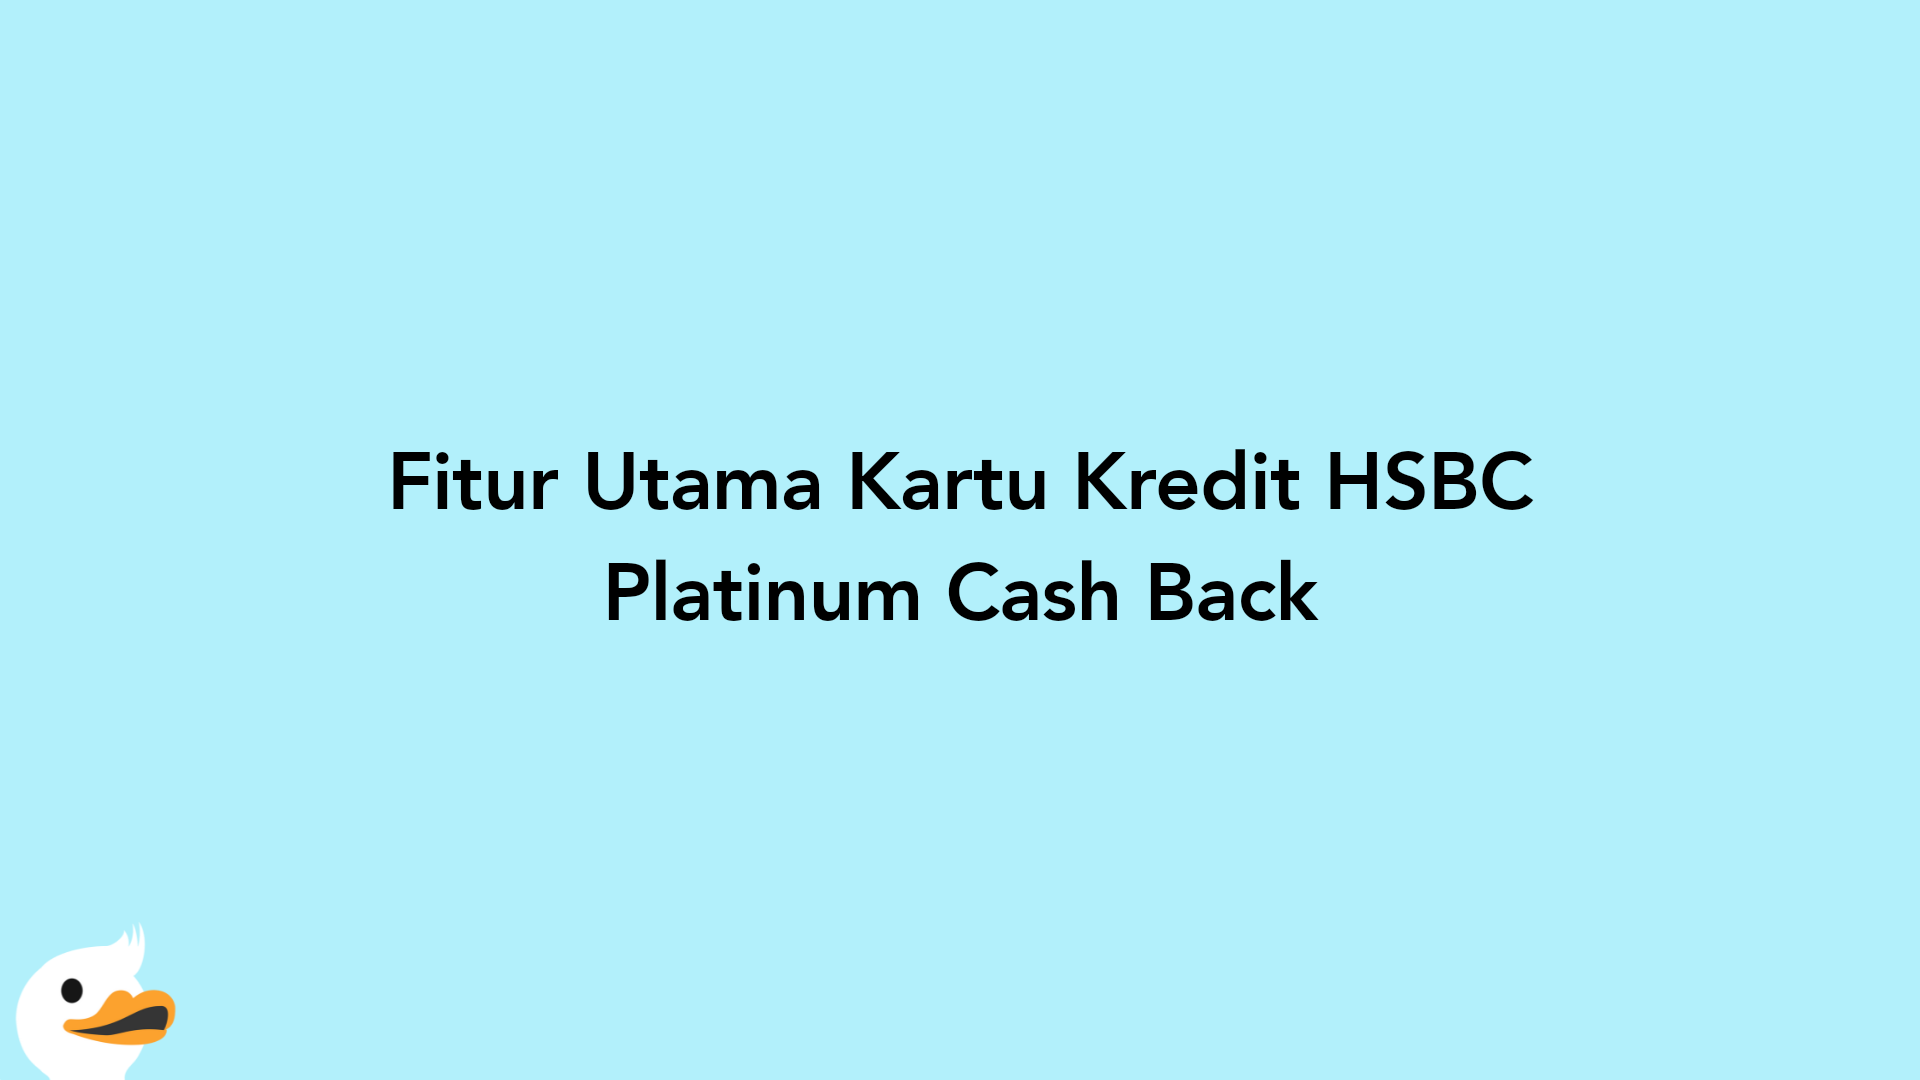 Fitur Utama Kartu Kredit HSBC Platinum Cash Back